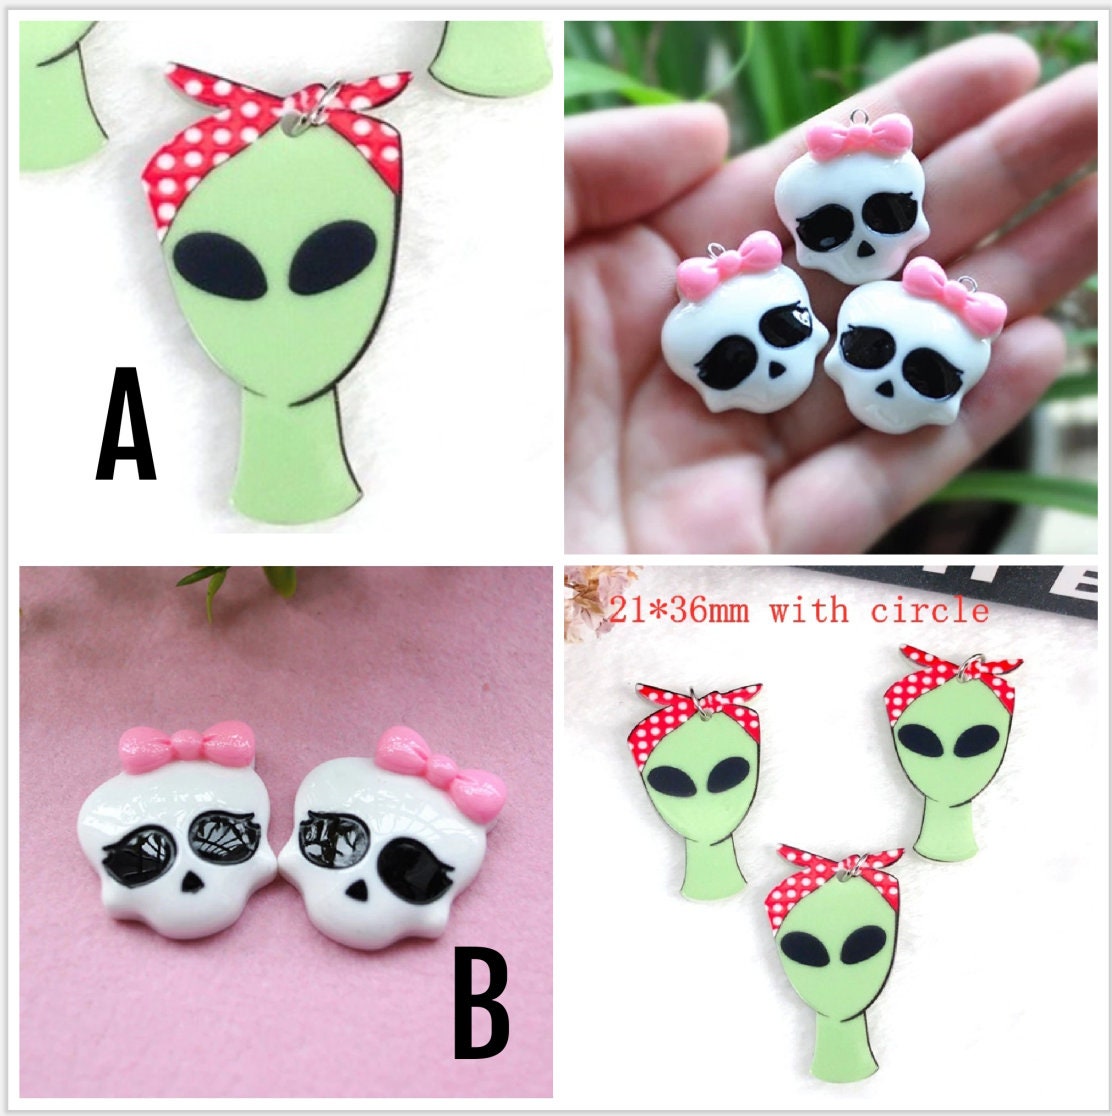 Girl Alien Charm | Bandana UFO Charm | Baby Skull Charm | Resin Charm Flat back Alien Skull For Earrings, Necklace, Keychain, Pendant